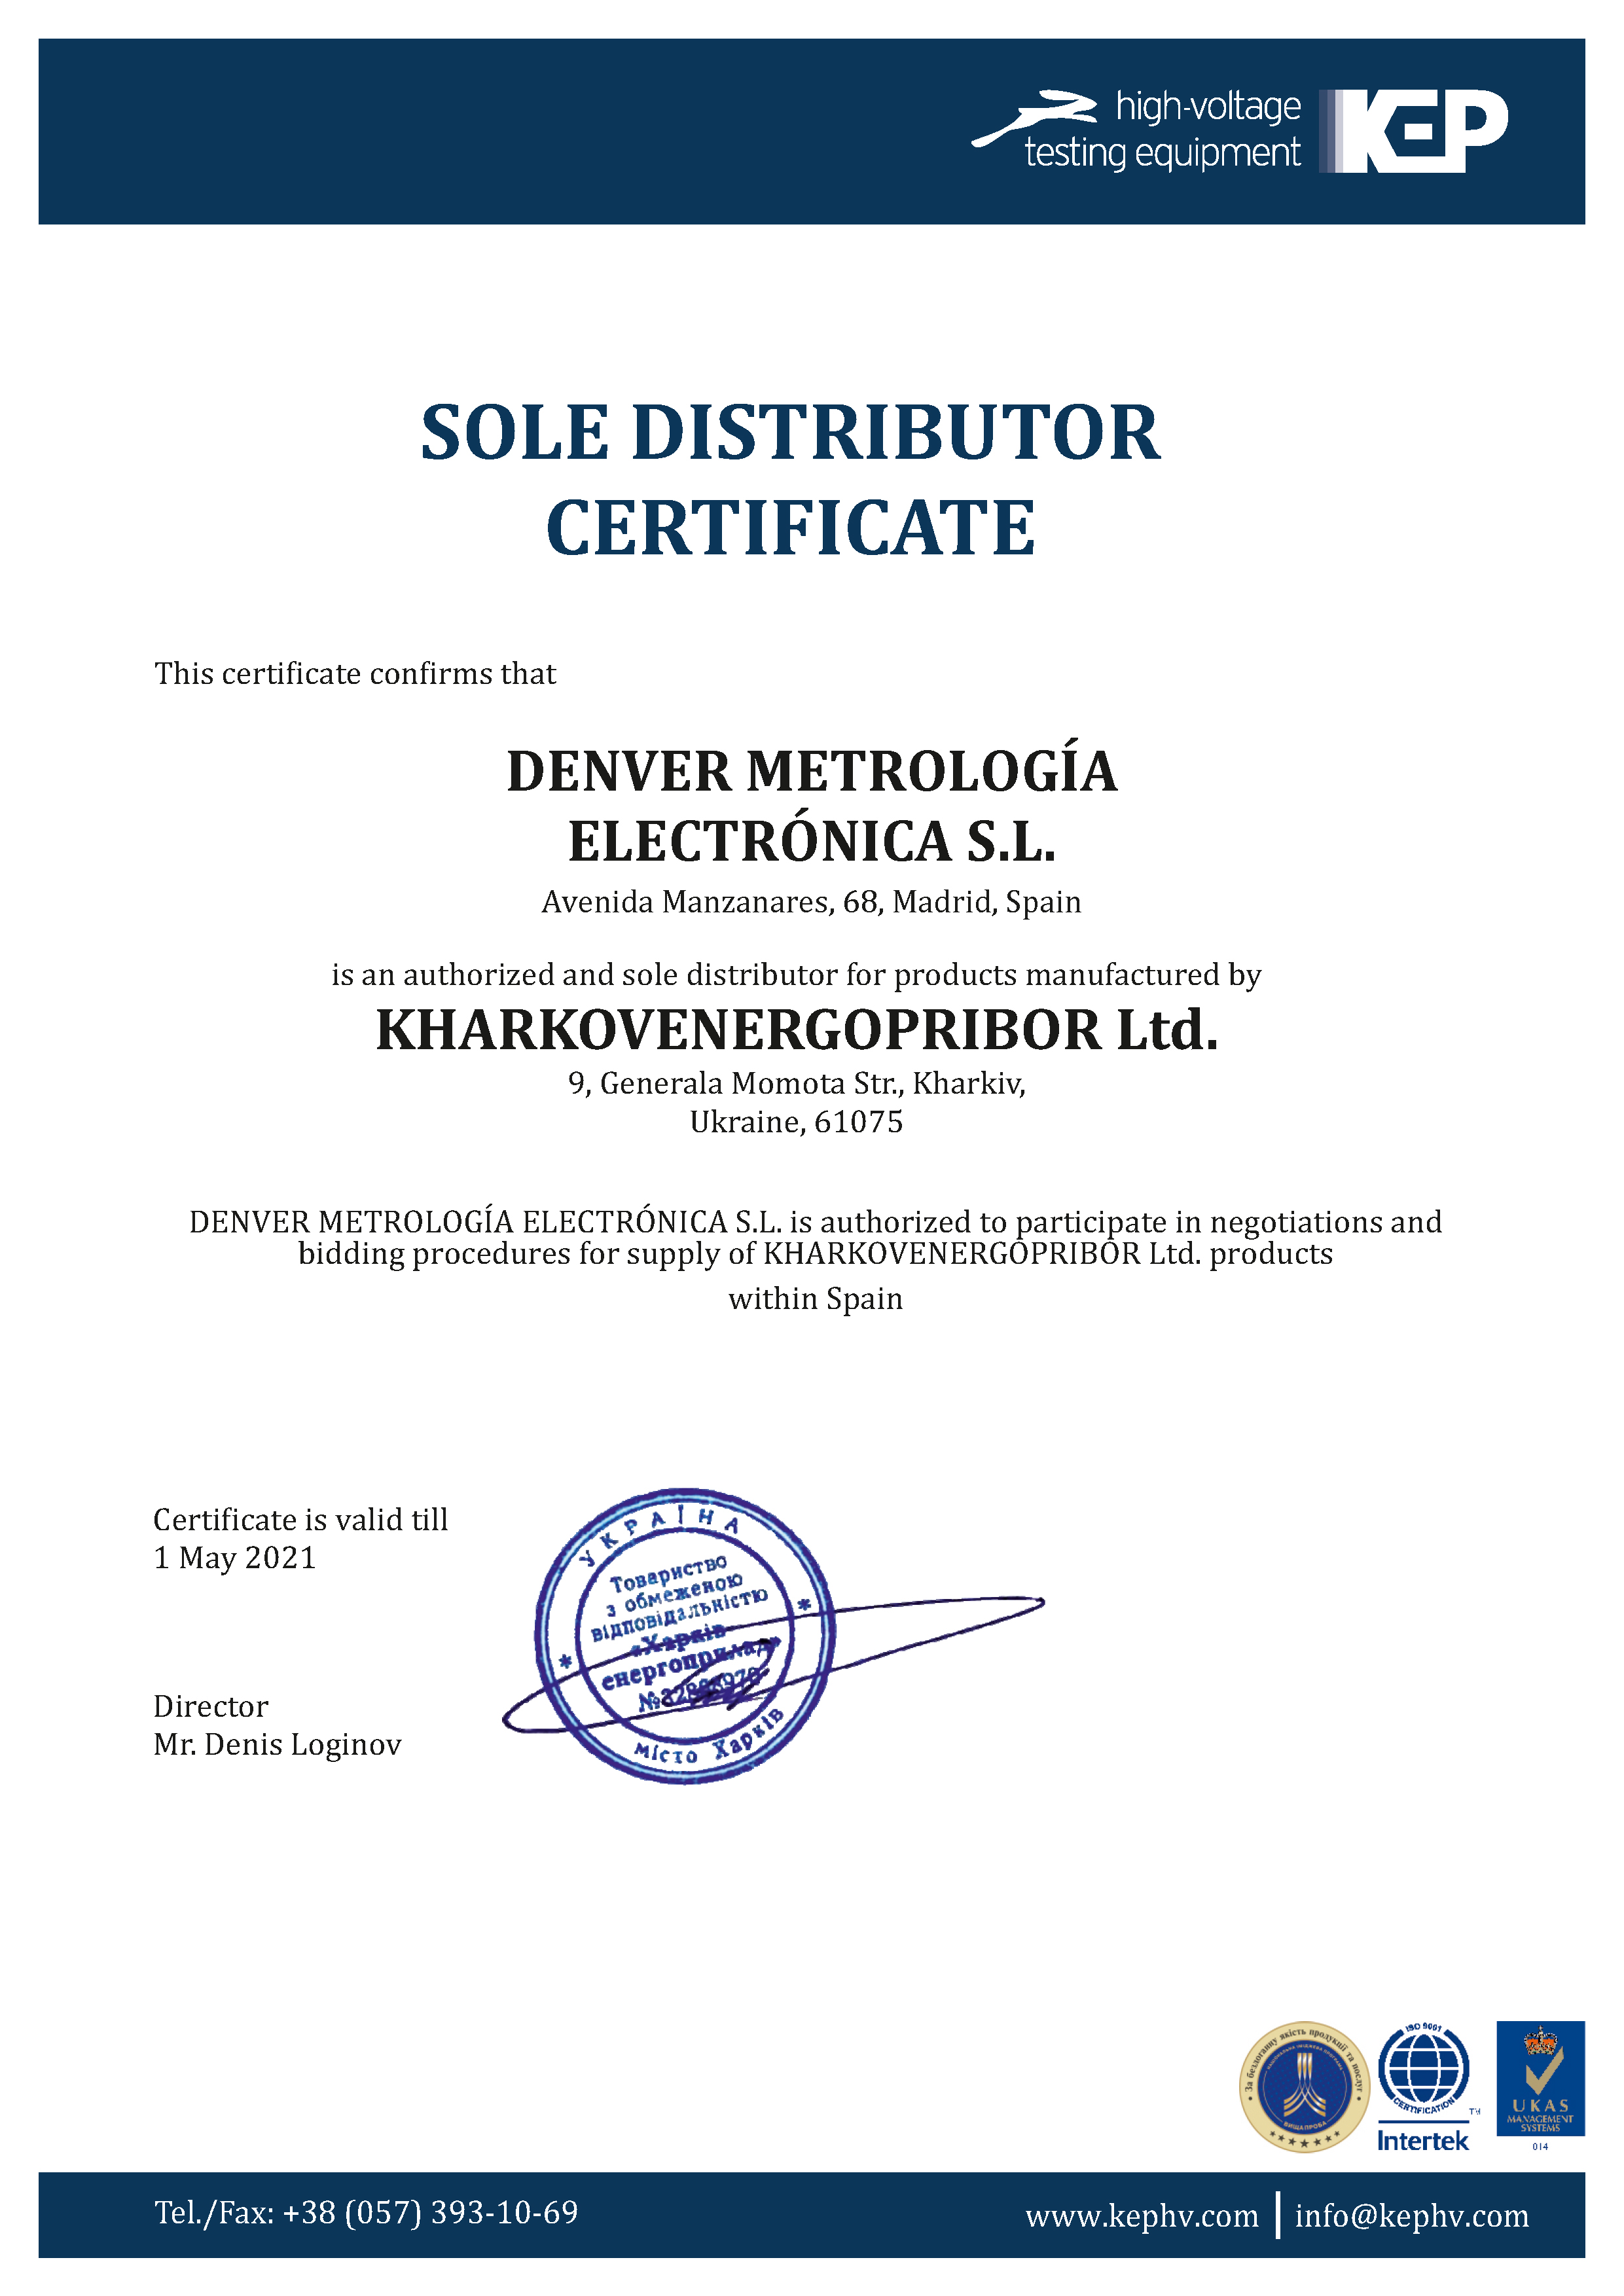 KharkovEnergoPribor Ltd. in Spain